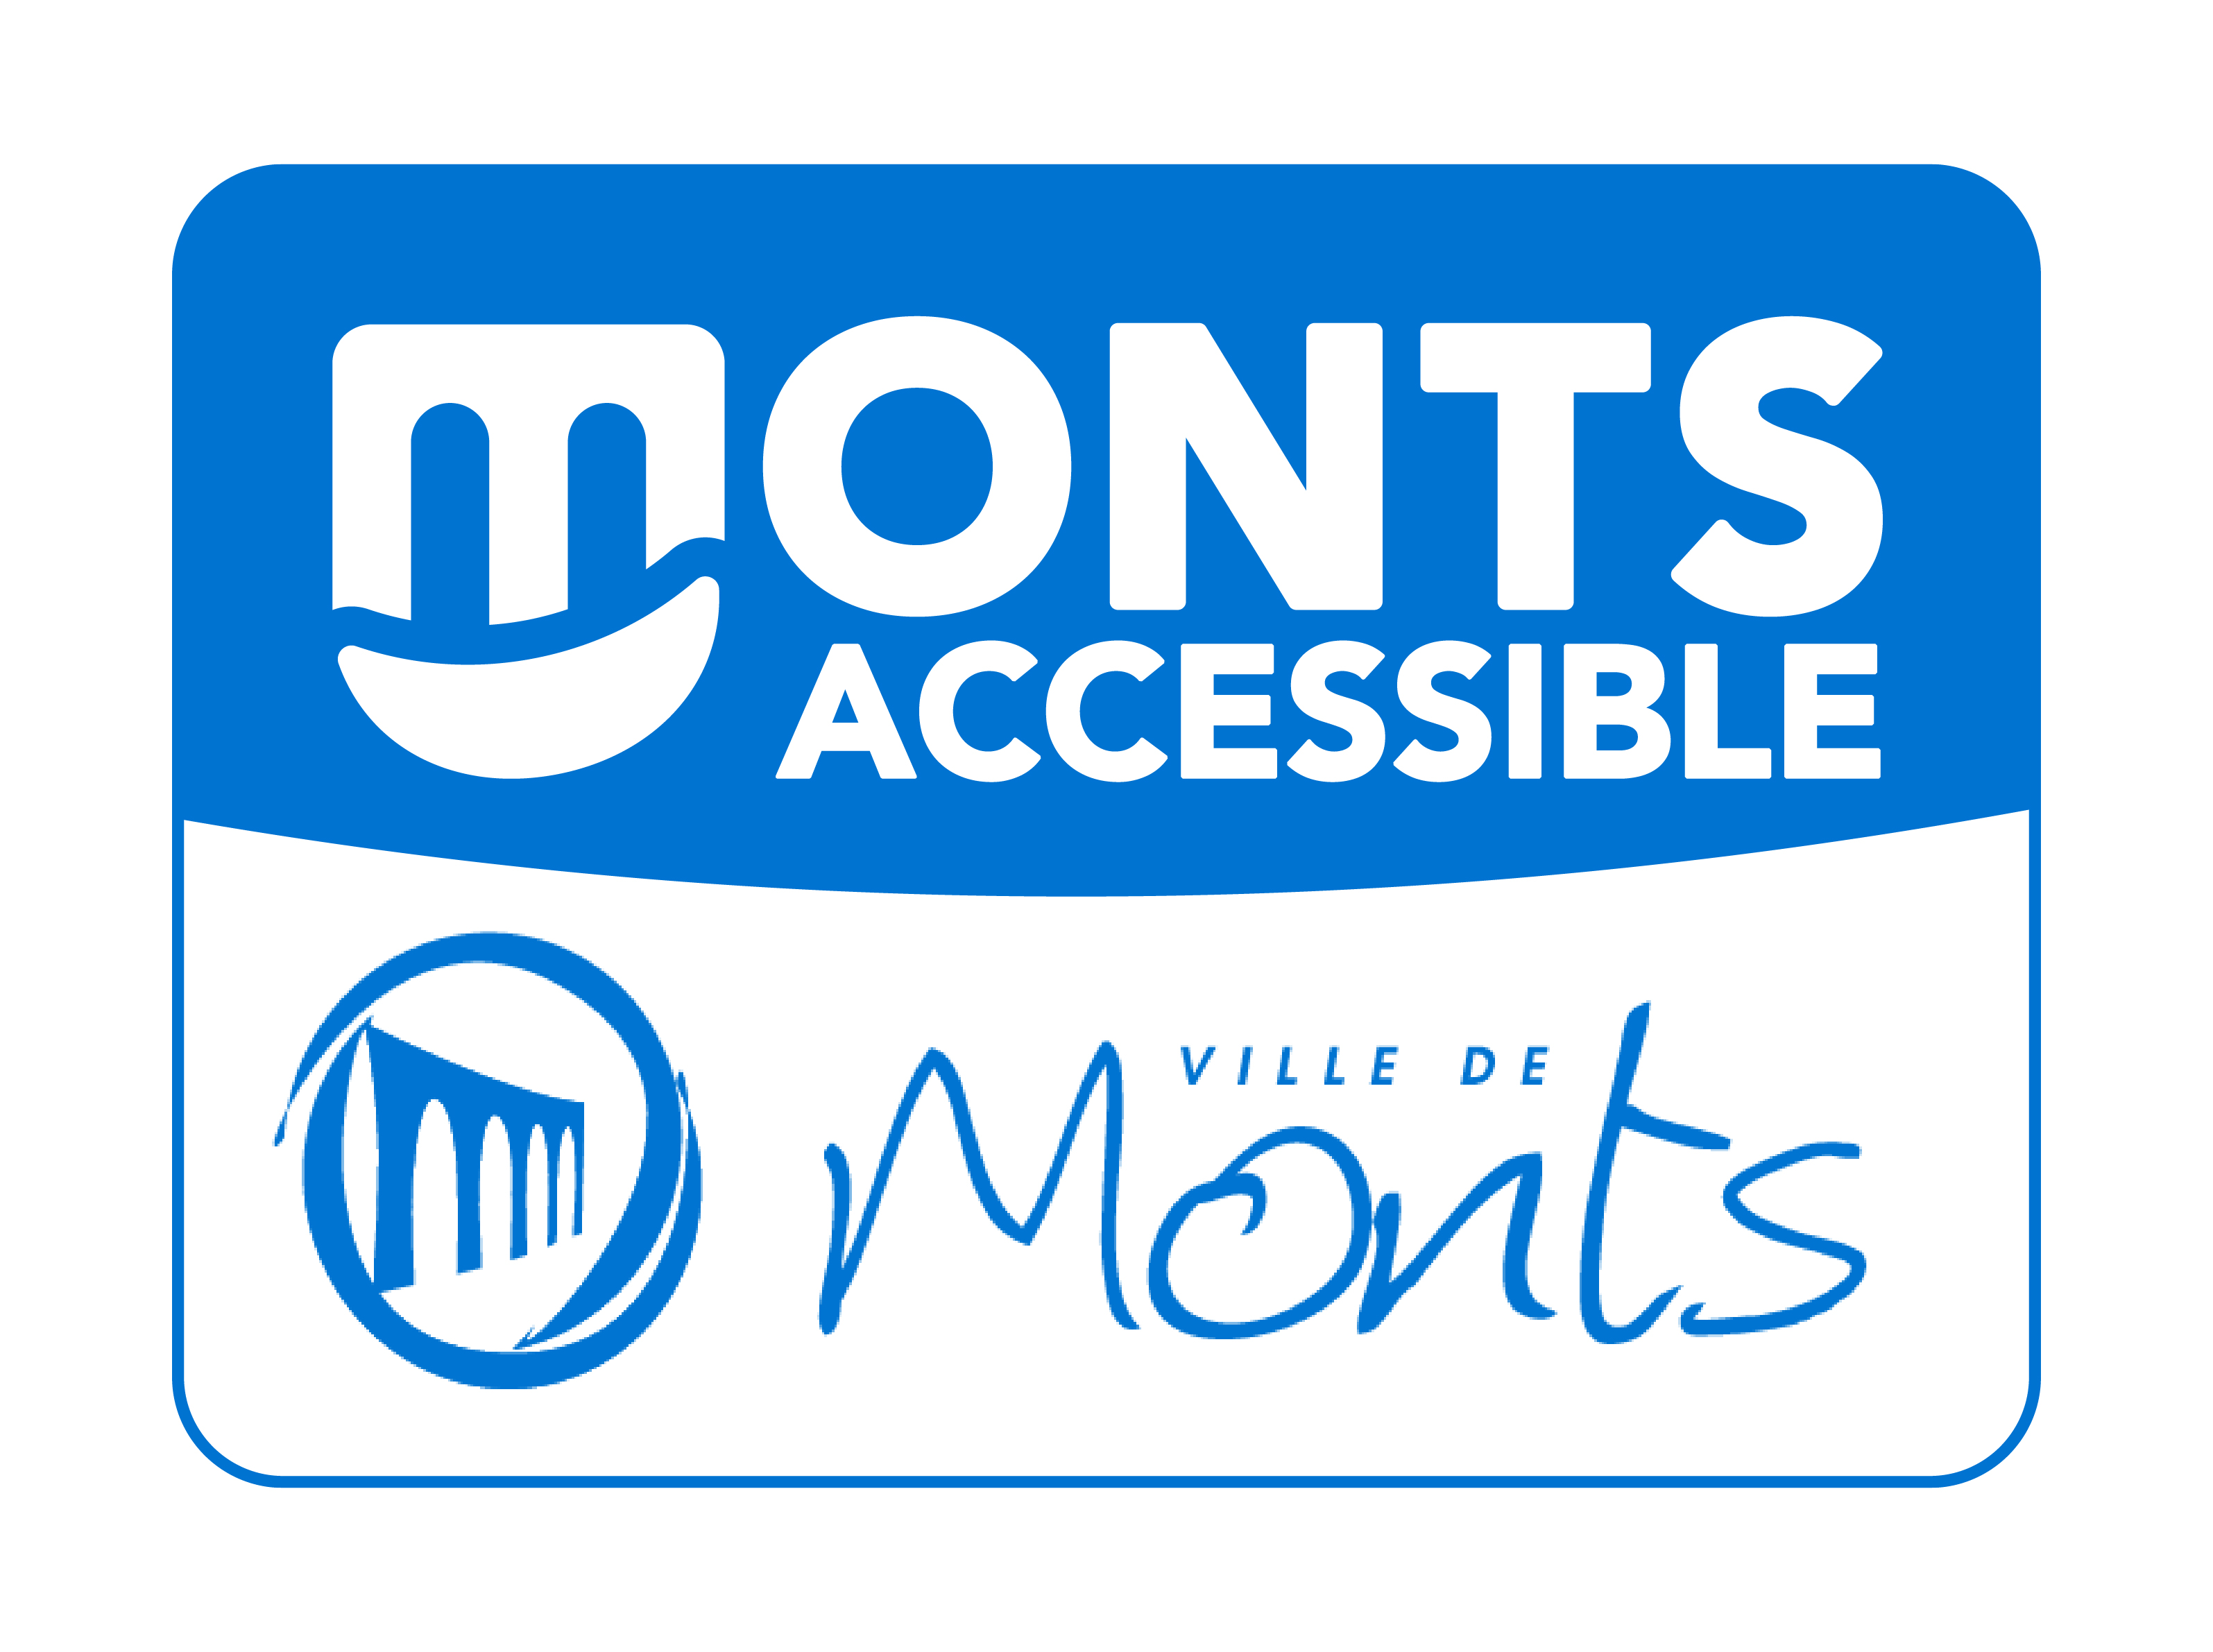 Bloc-Monts_Monts-Accessible_Plan de travail 1.jpg